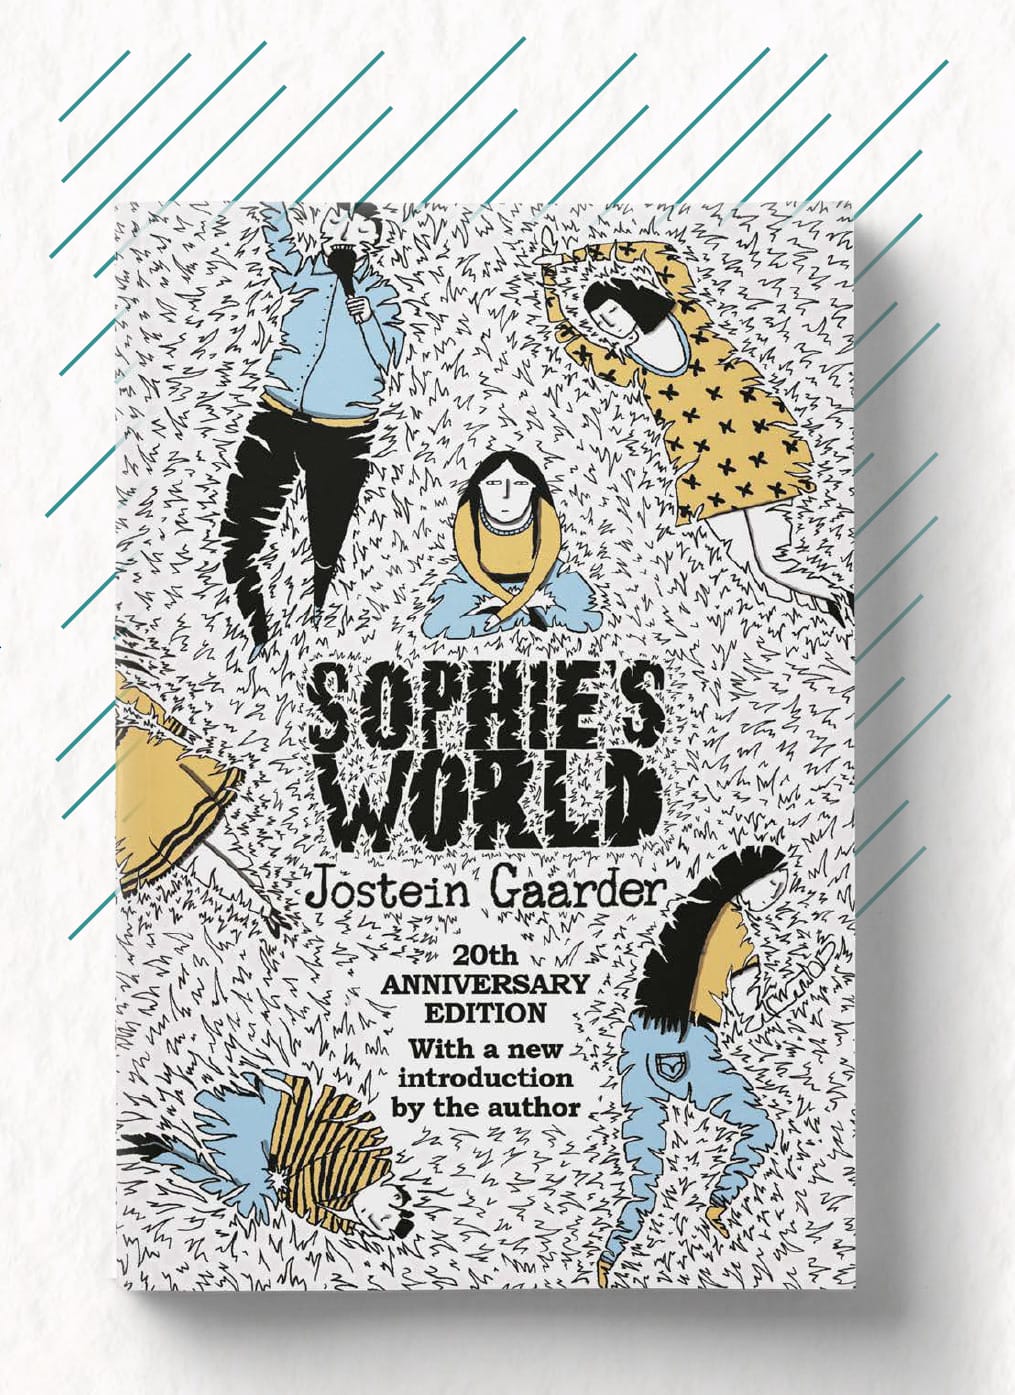 หนังสือโลกของโซฟีฉบับภาษาอังกฤษที่ถูกตีพิมพ์เนื่องในโอกาสครบรอบ 20 ปี
Photo: Orion Publishing Group